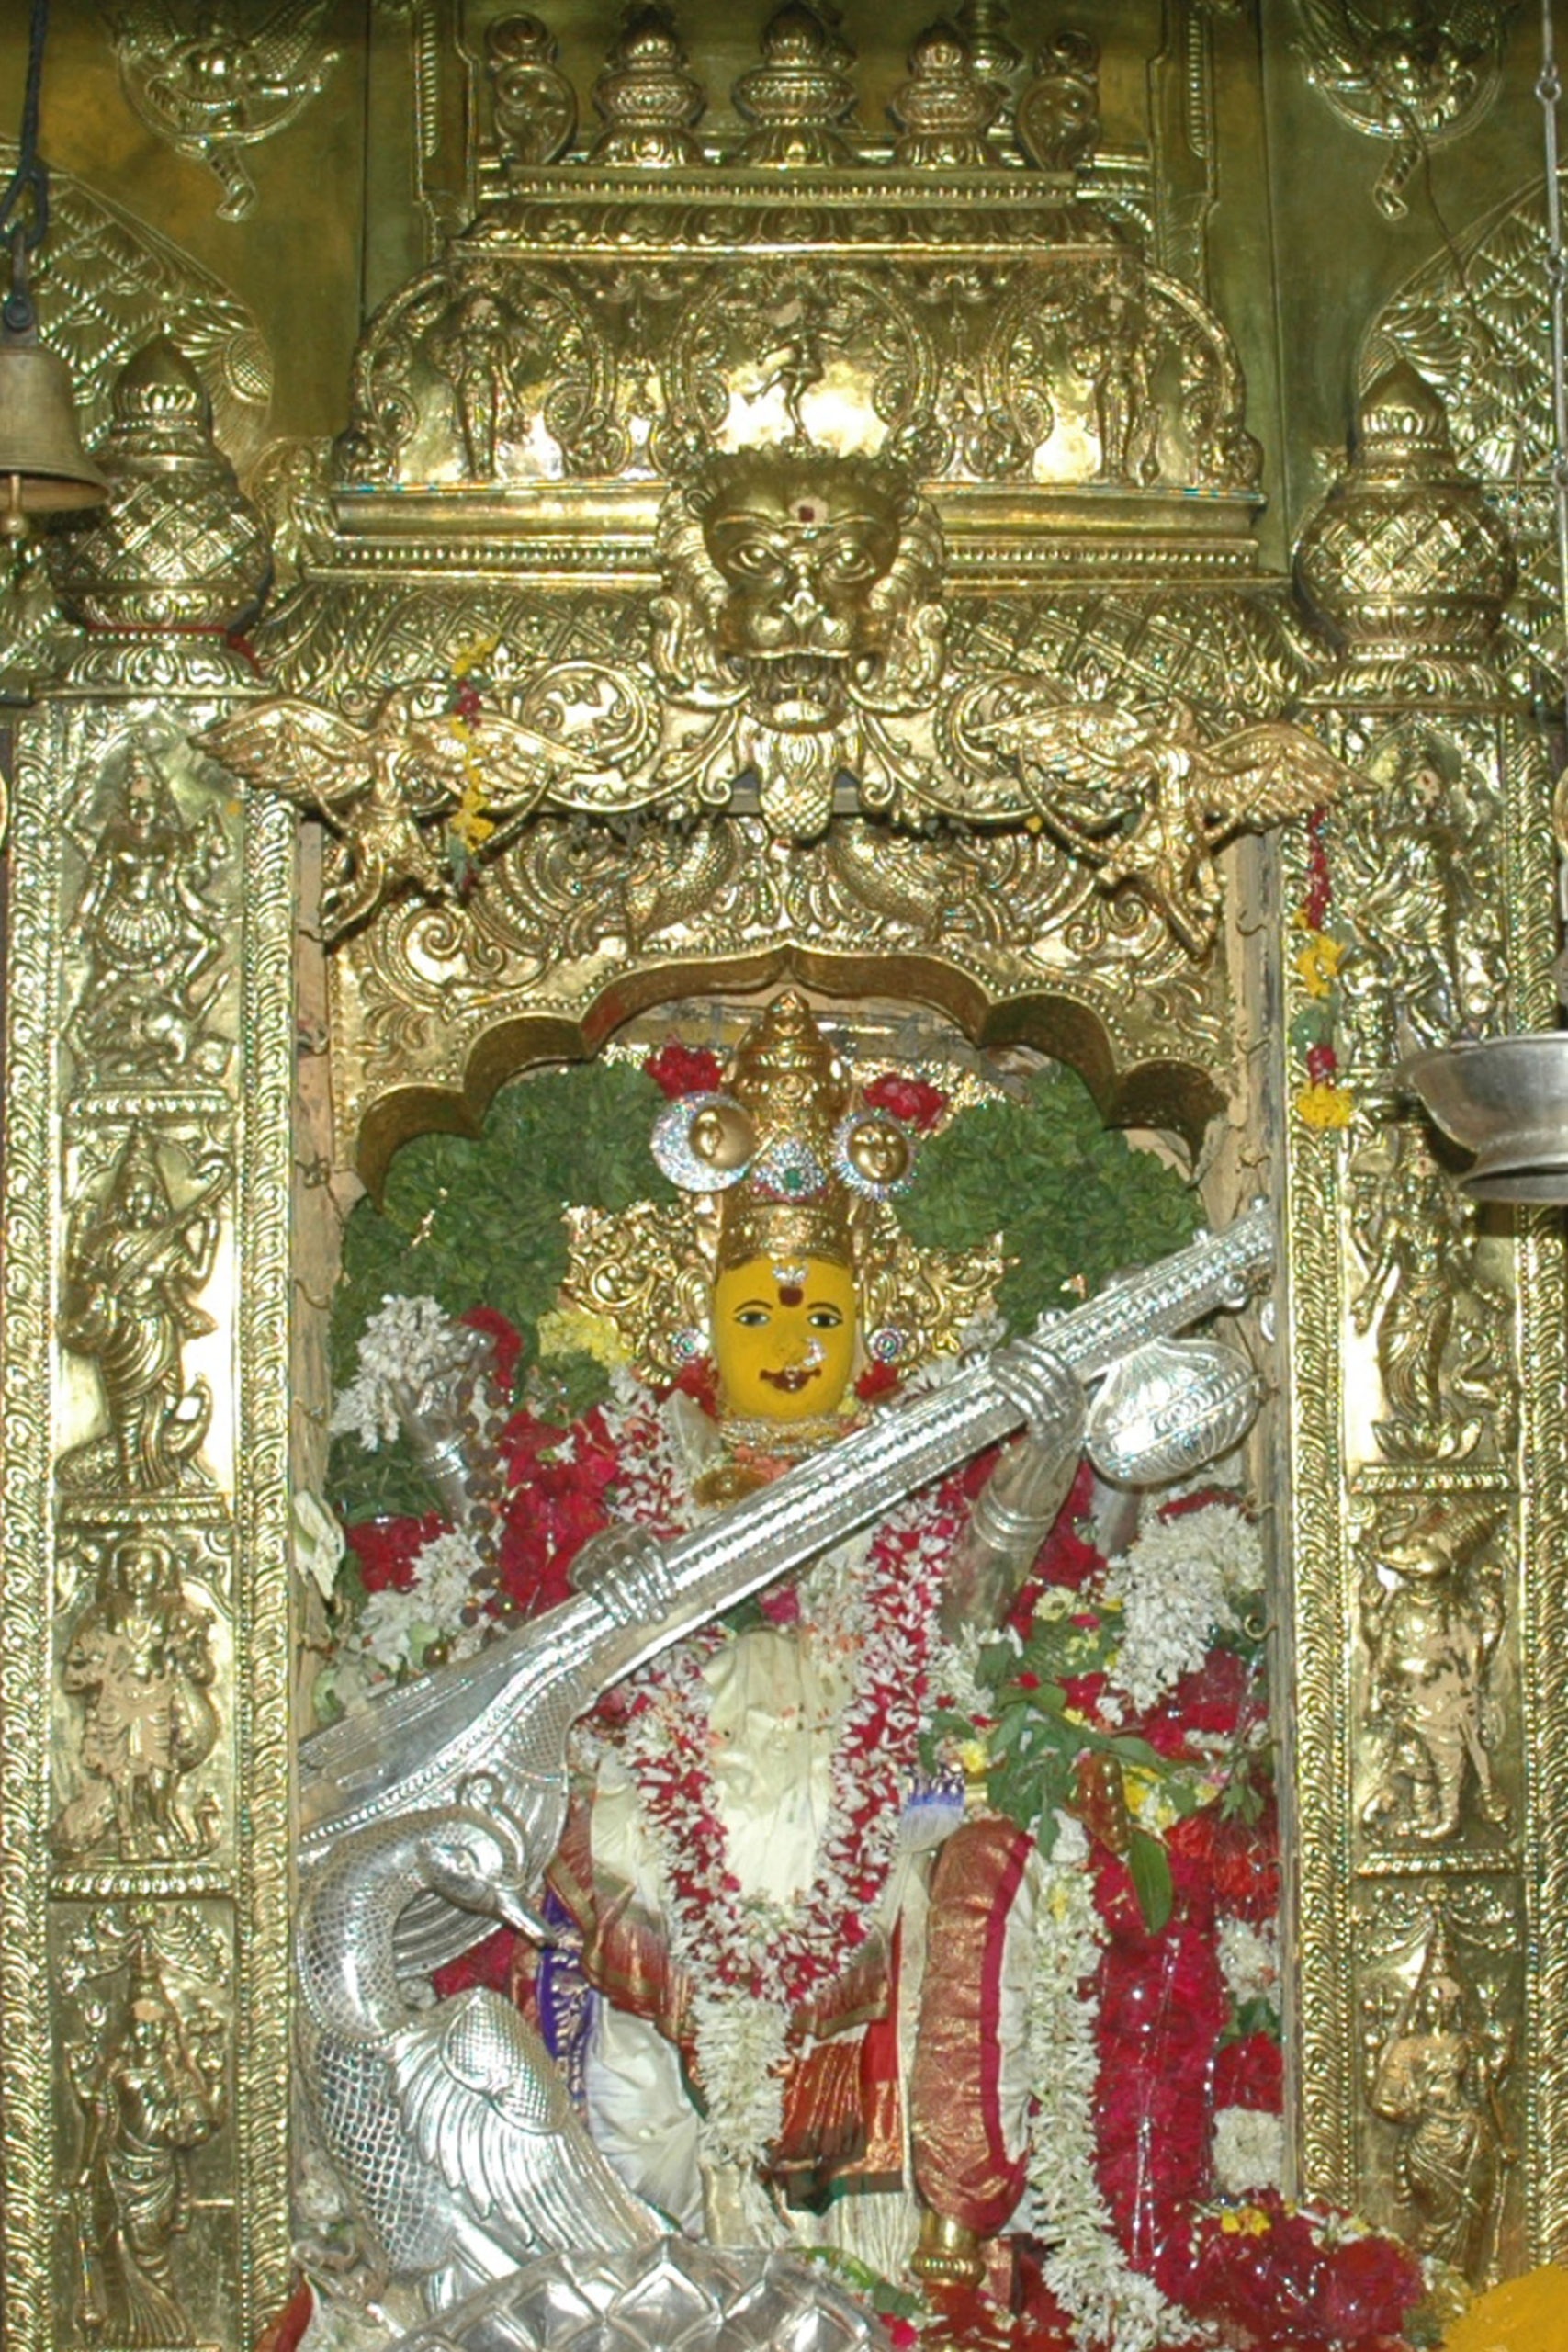 Kanaka Durga Temple,Vijayawada, Andhra Pradesh